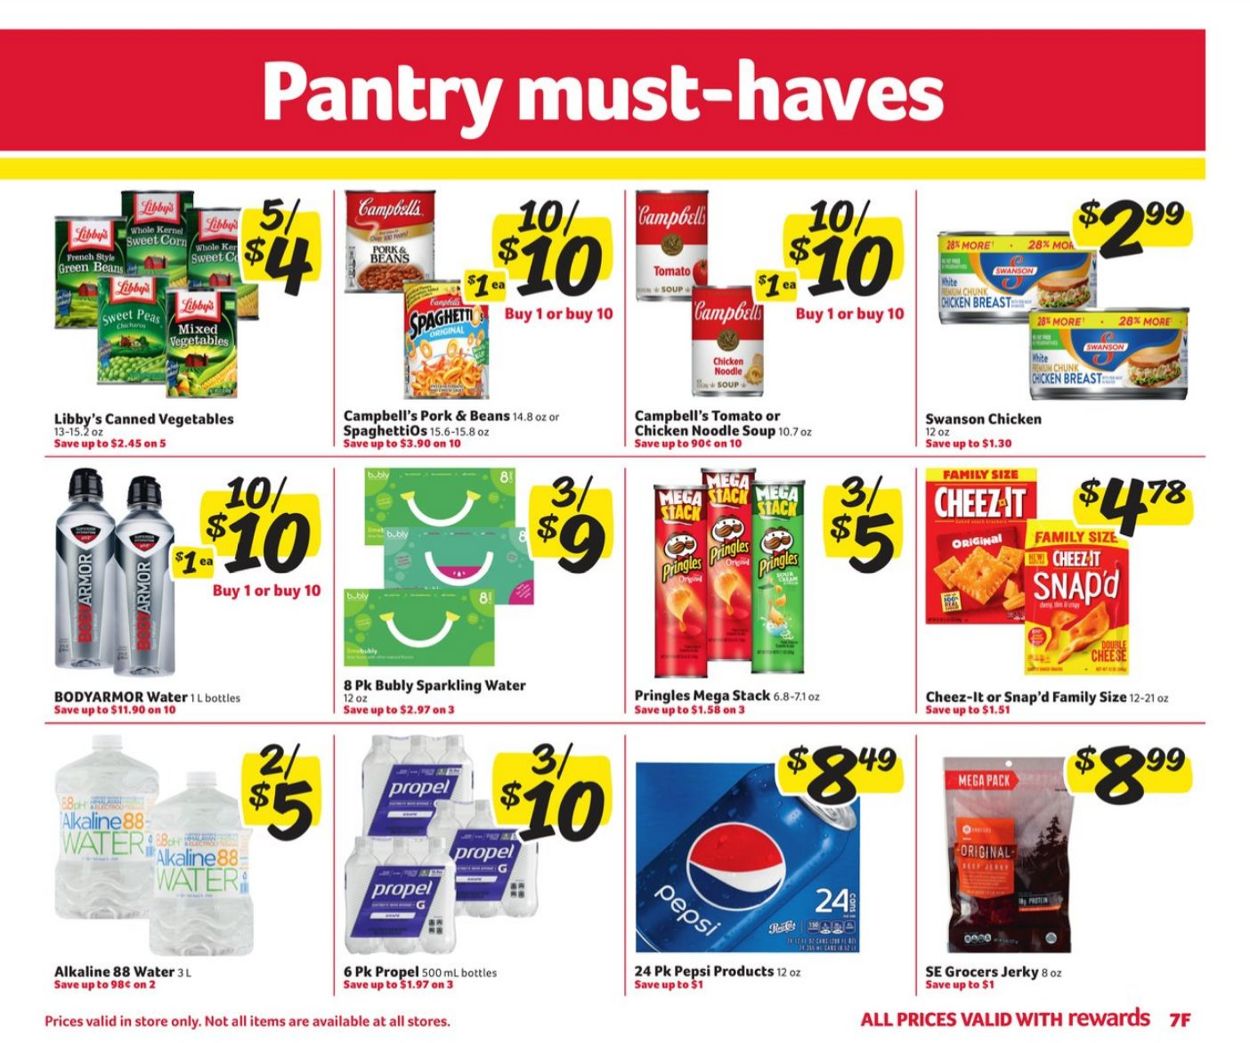 Catalogue Harveys Supermarket from 08/11/2021